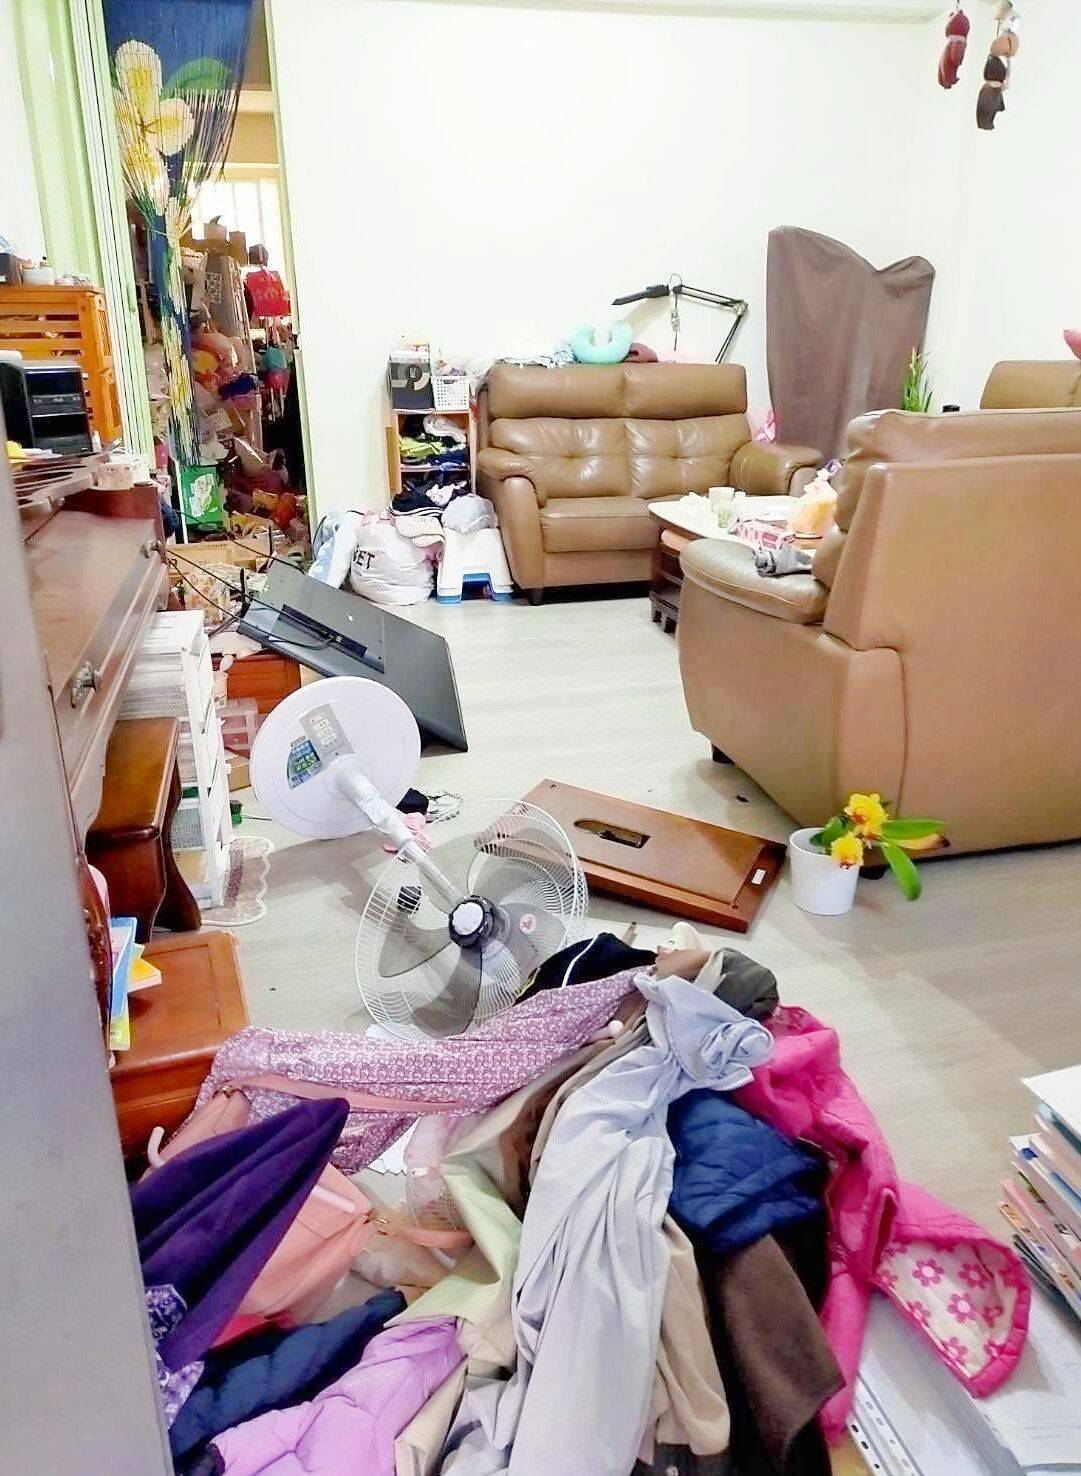 妹が娘2人を学校へ送った直後に地震　妹宅は家具が散乱し今も避難　宜野湾市の台湾料理店主、家族の無事は確認できたが「心が痛い。不安です」